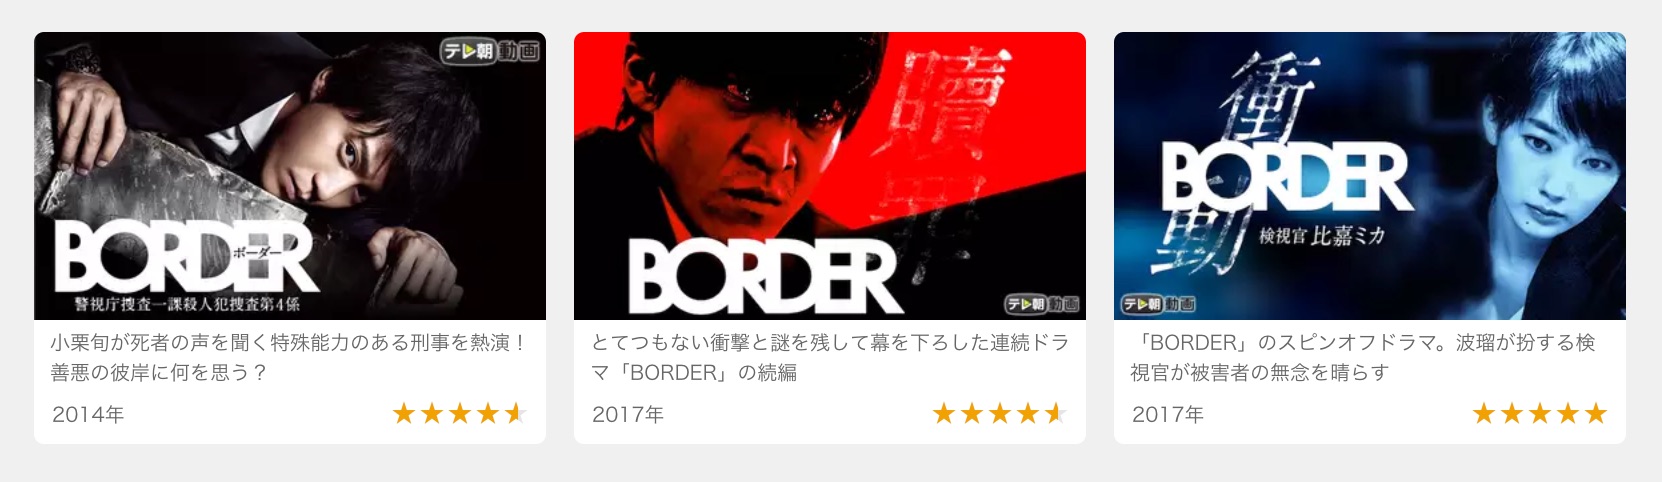 ドラマ Border 動画 Hd壁紙画像